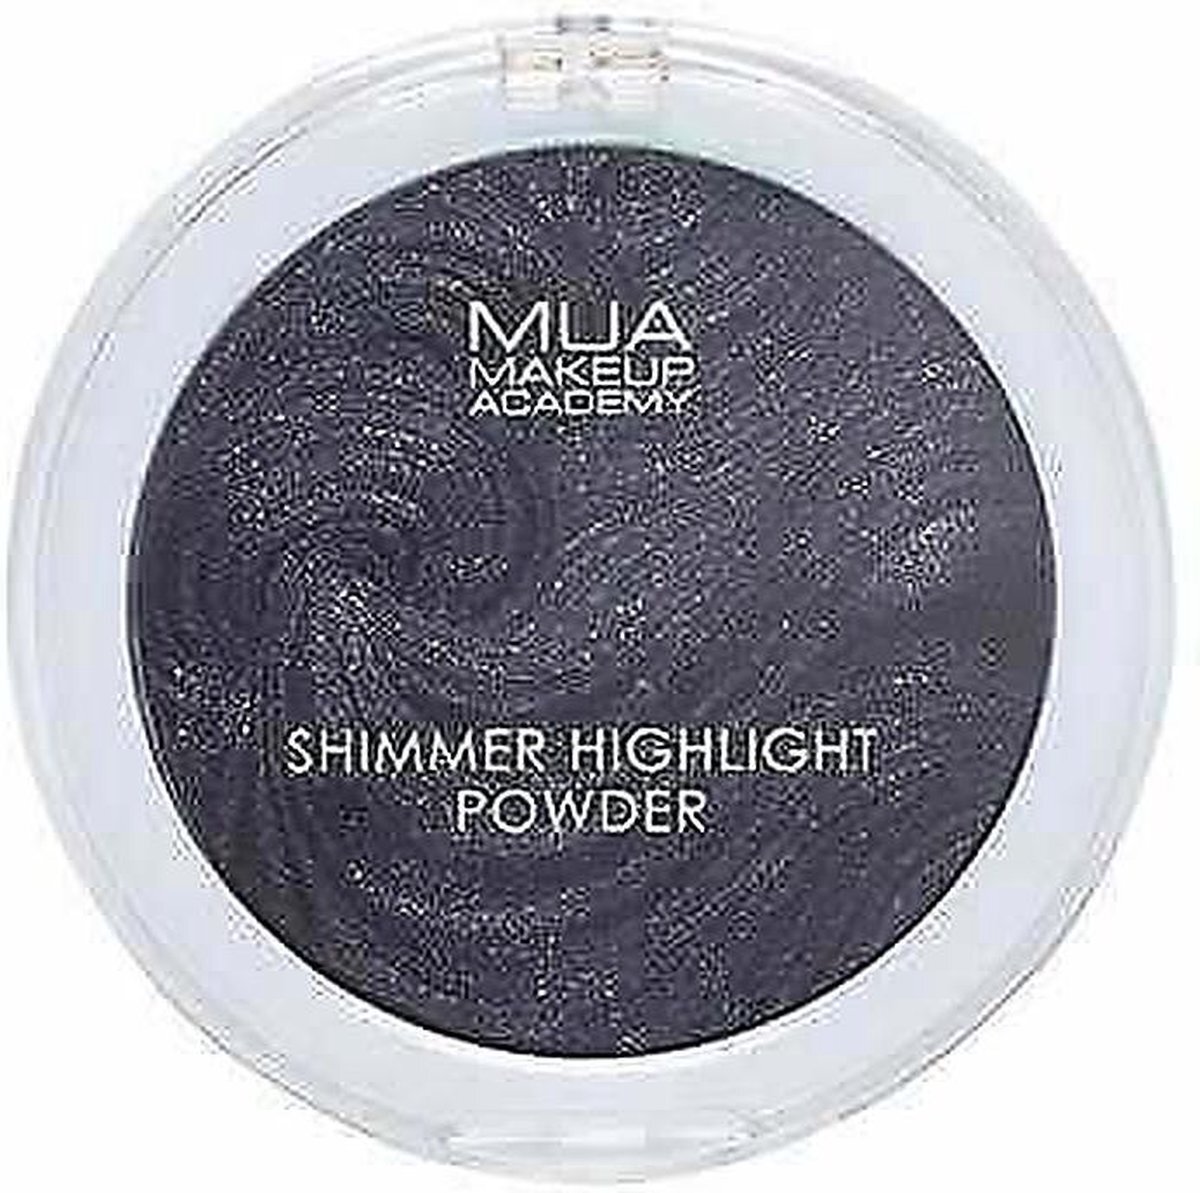 MUA Shimmer Highlight Powder Highlighter - Black Magic